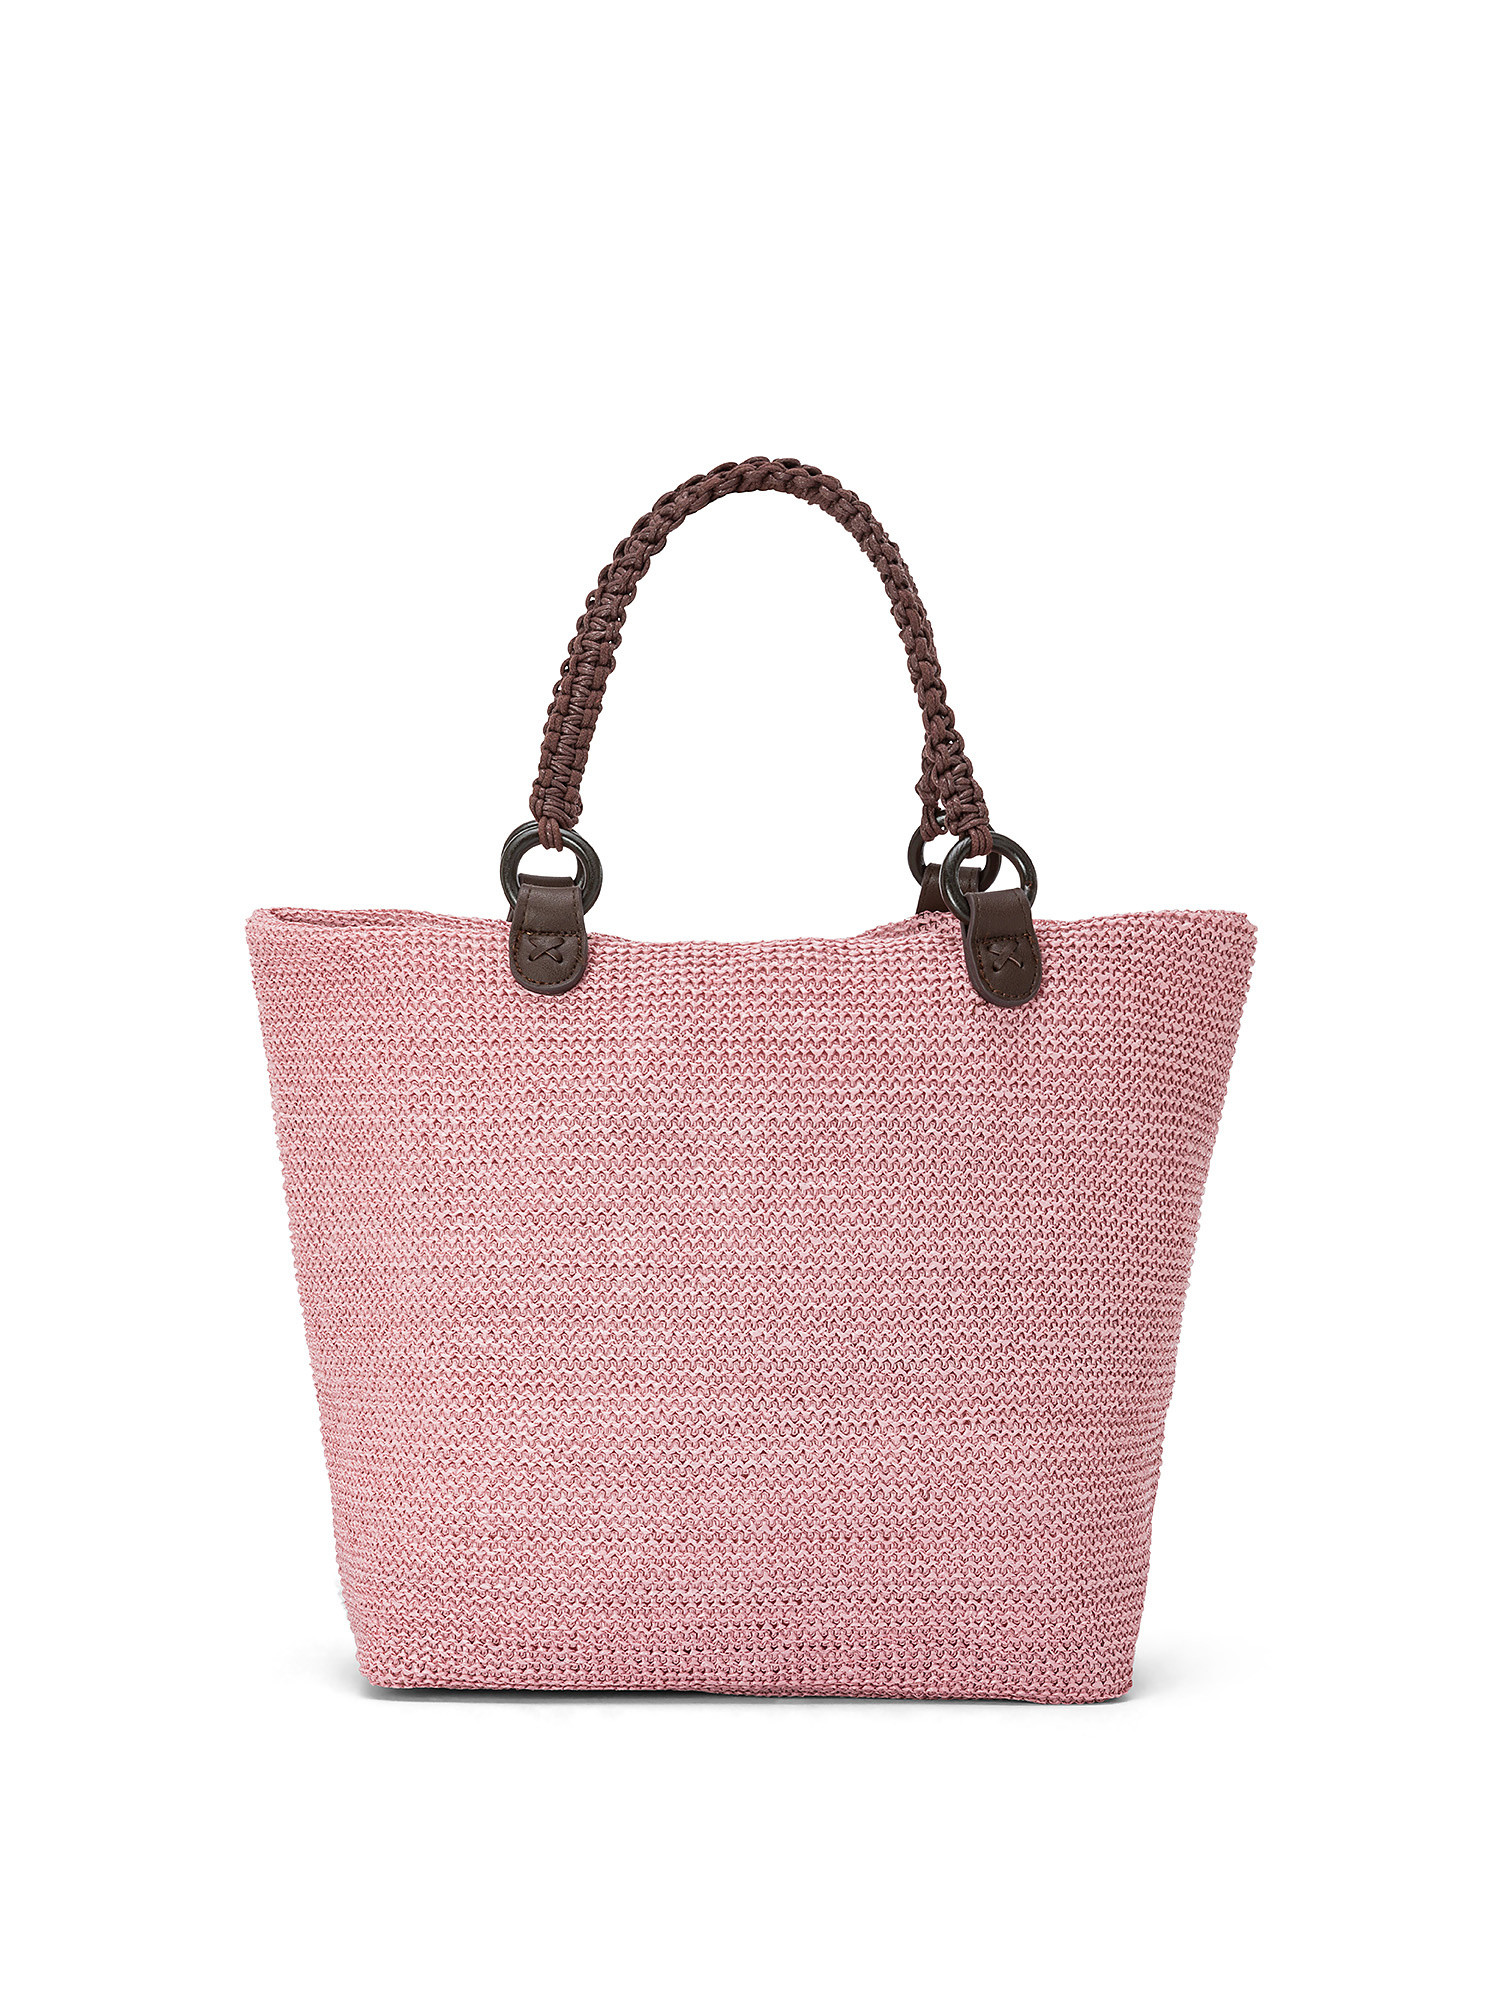 Koan - Shopping bag, Pink, large image number 0